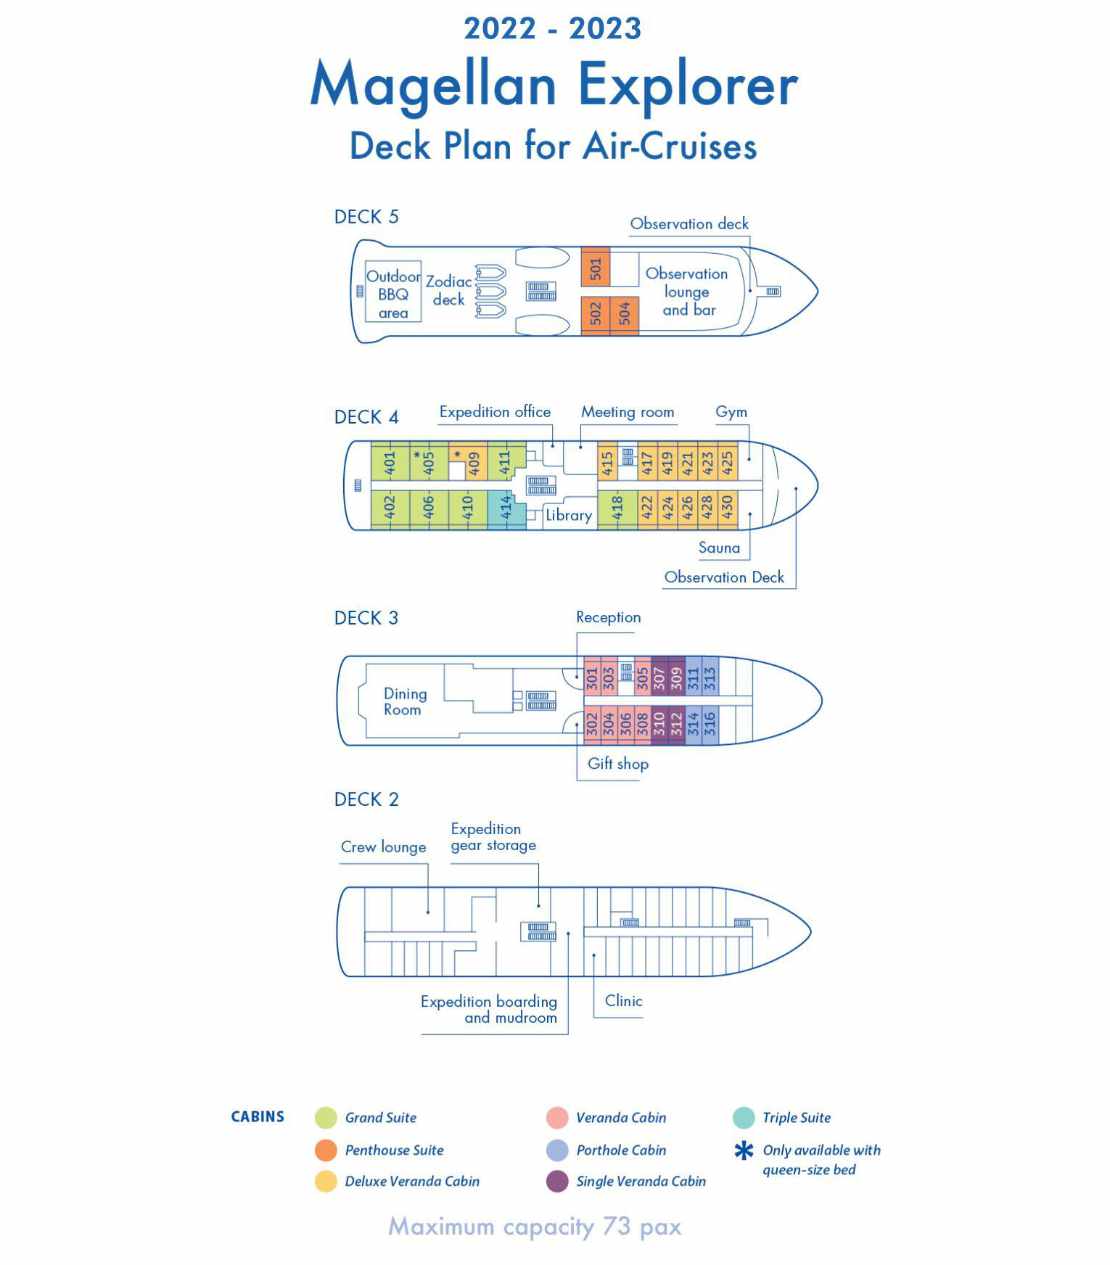 Plano de cubierta del Magellan Explorer